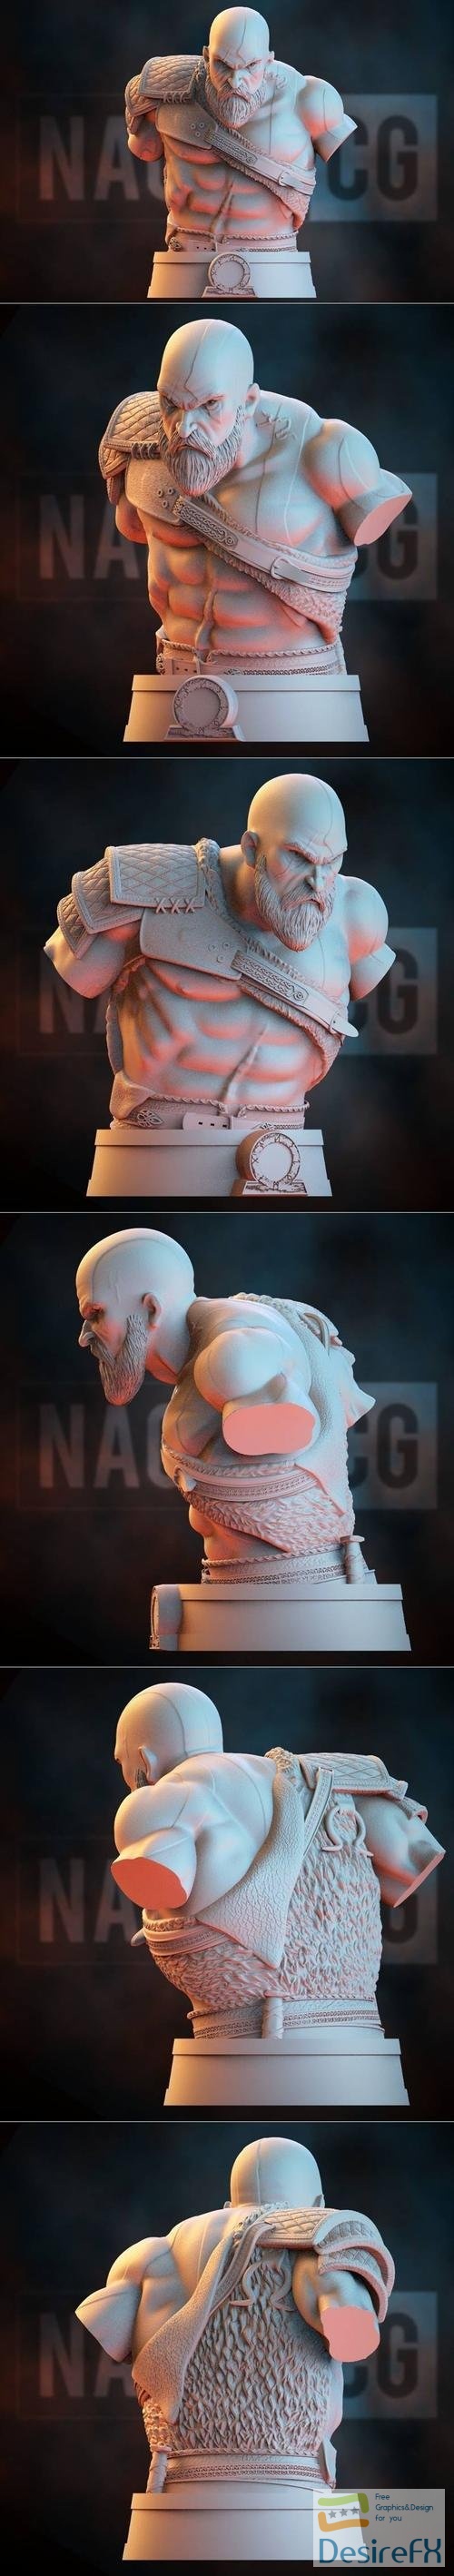 Kratos - God of War Bust - Fan Art – 3D Print